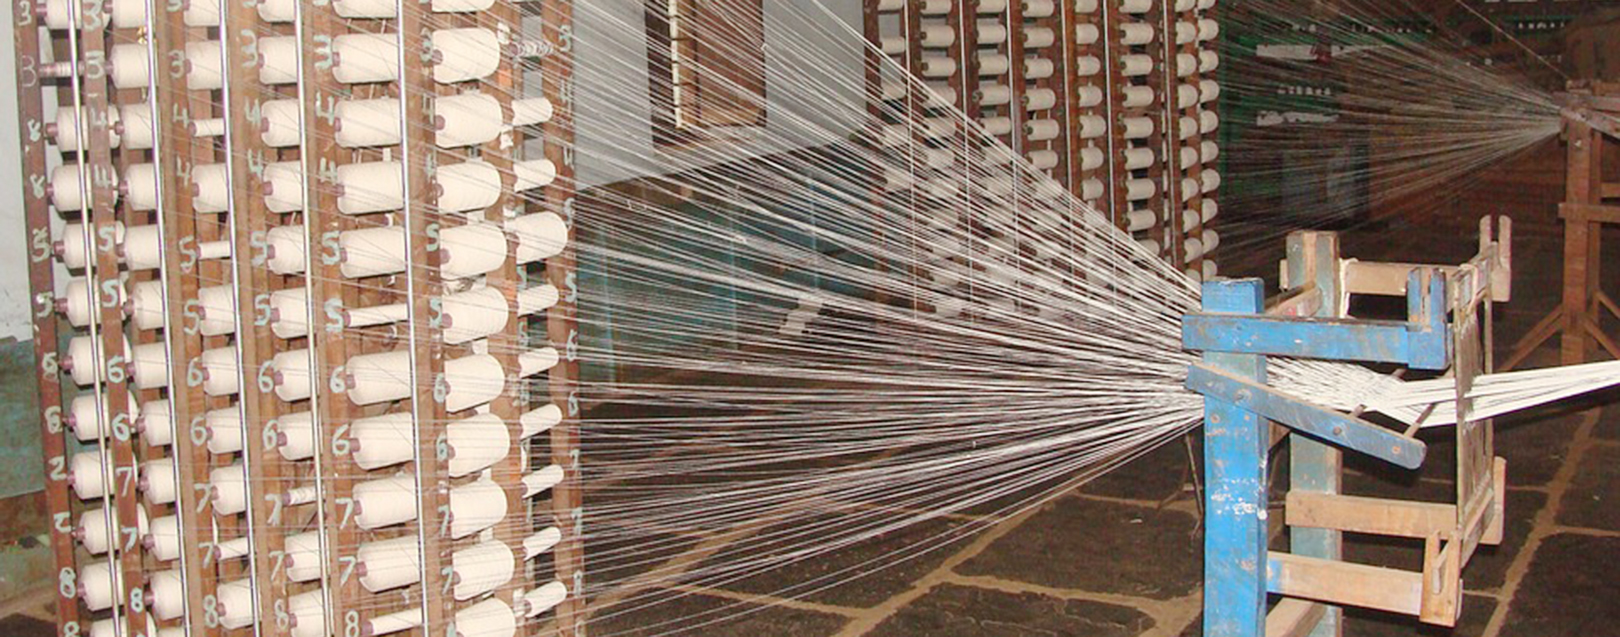 Khadi weaving, spinning centre opens in Srinagar